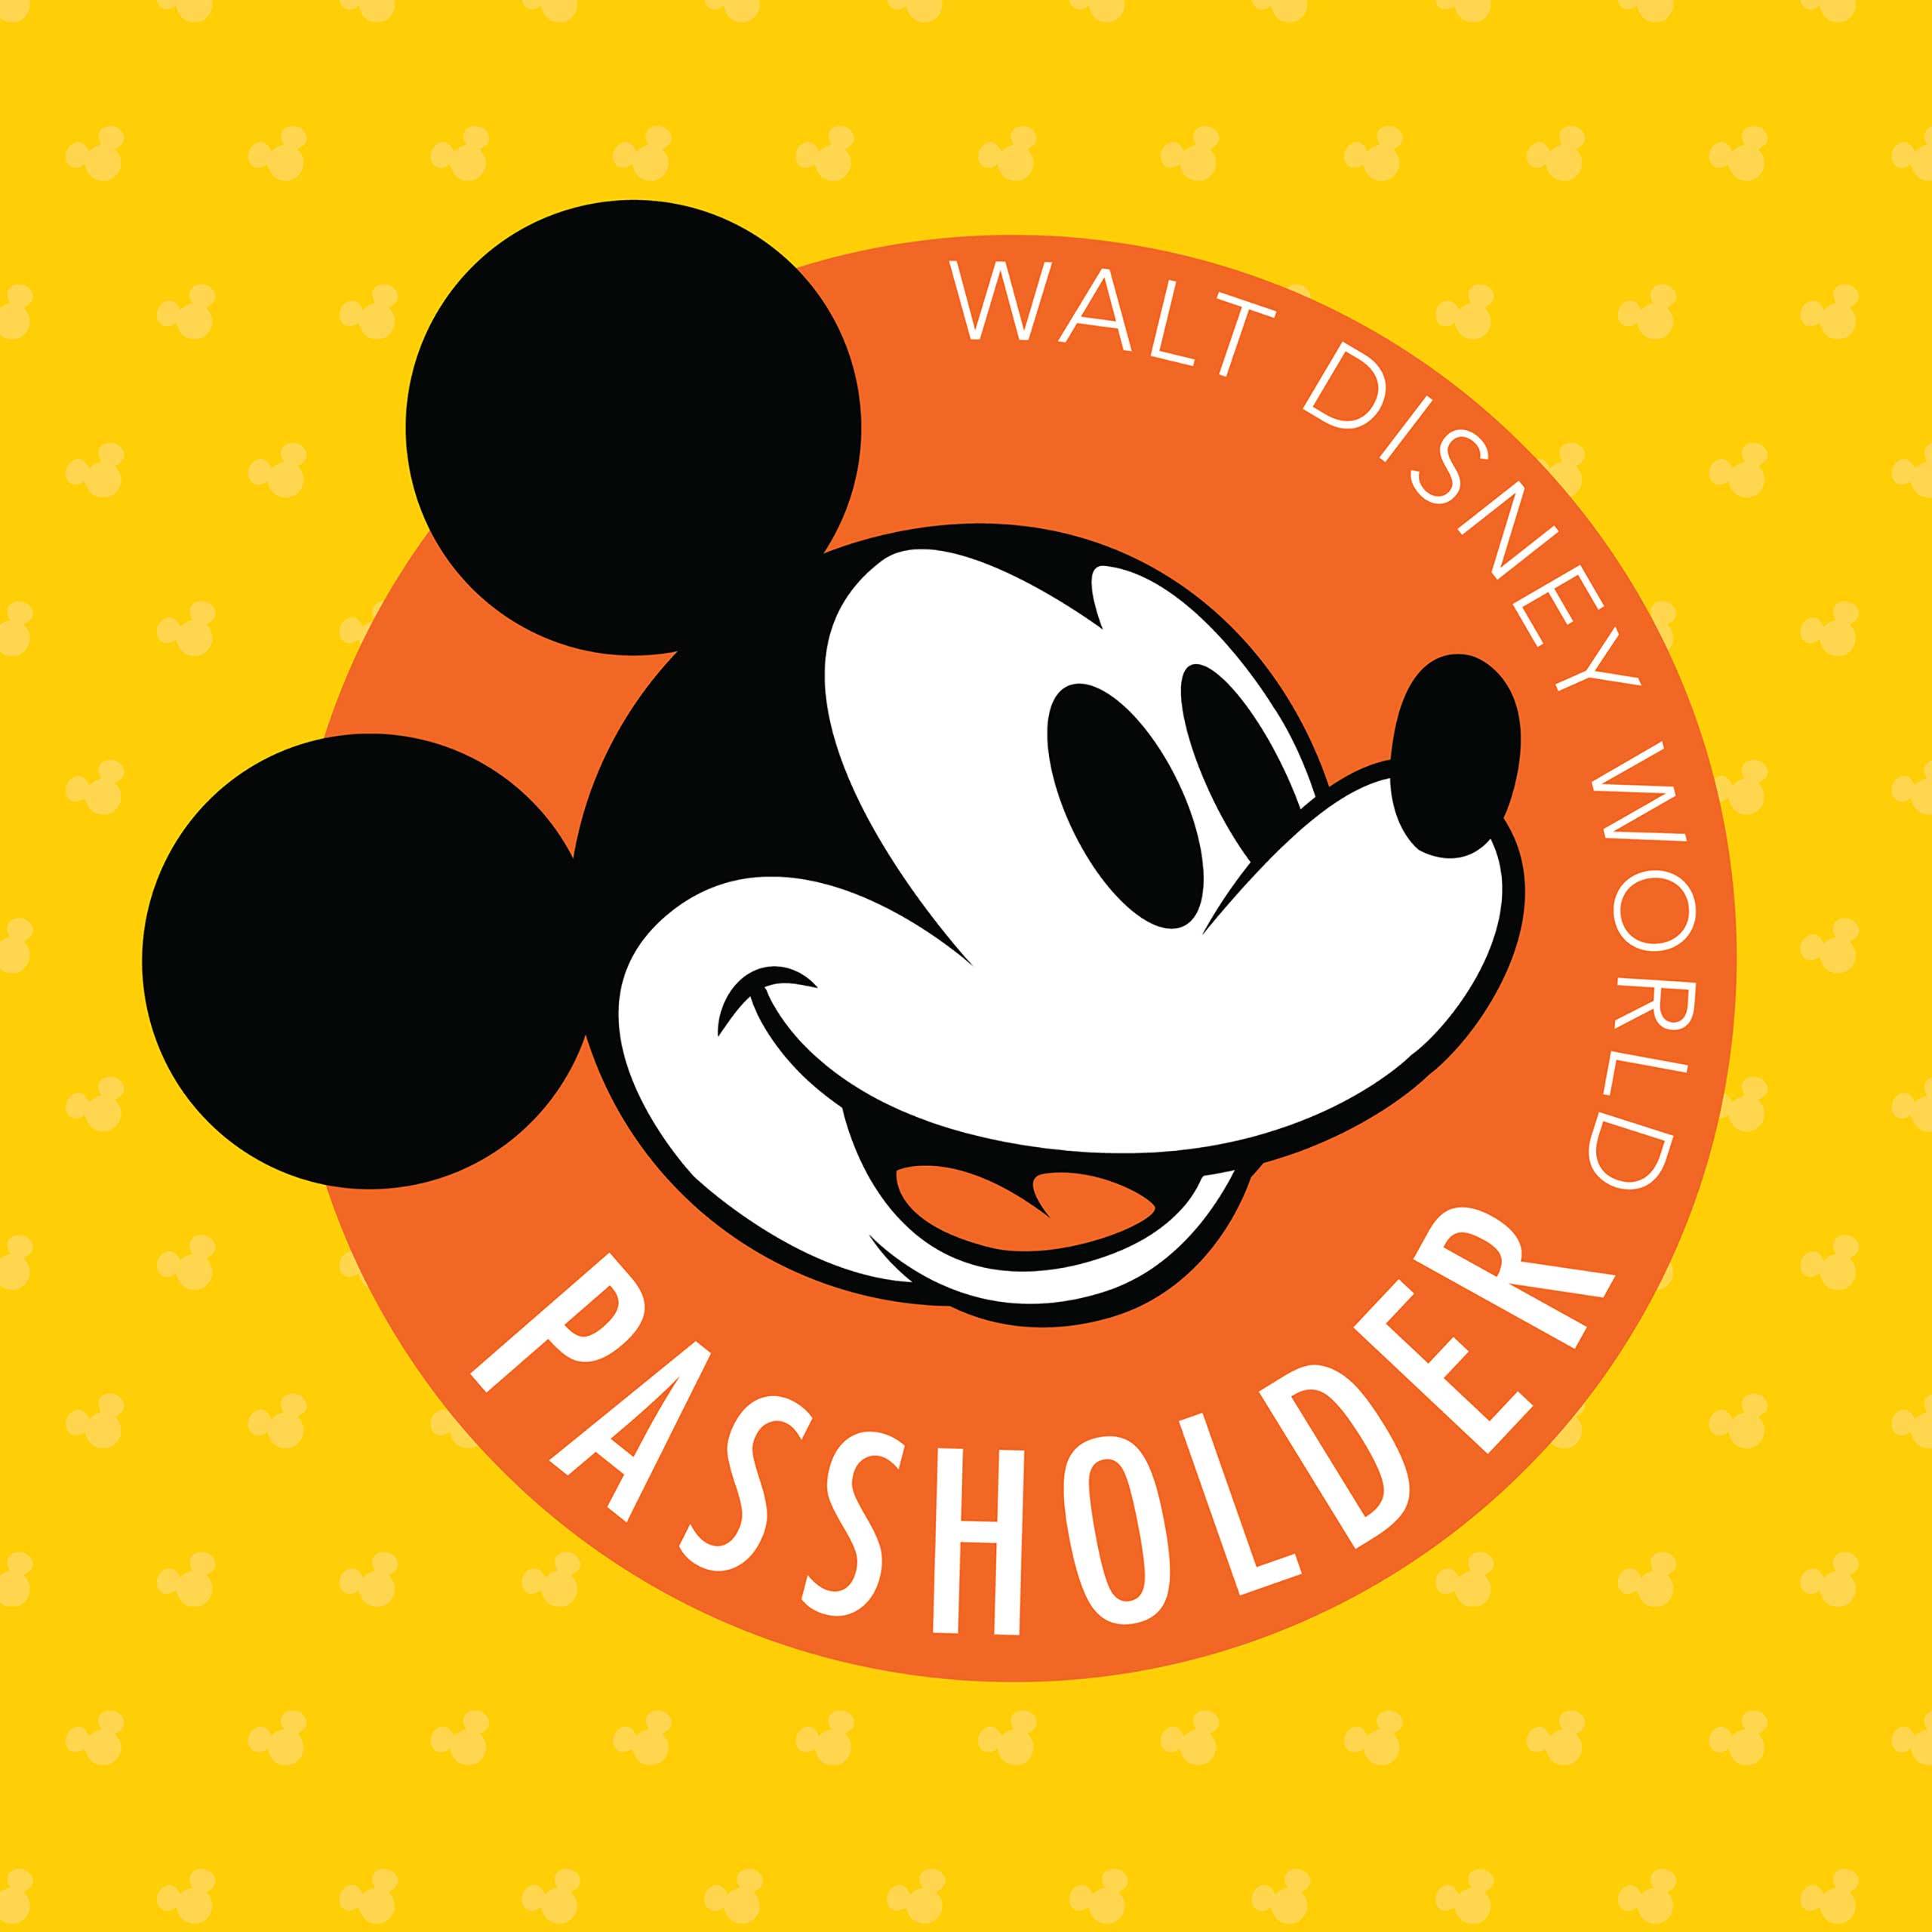 Walt Disney World Annual Passholder logo